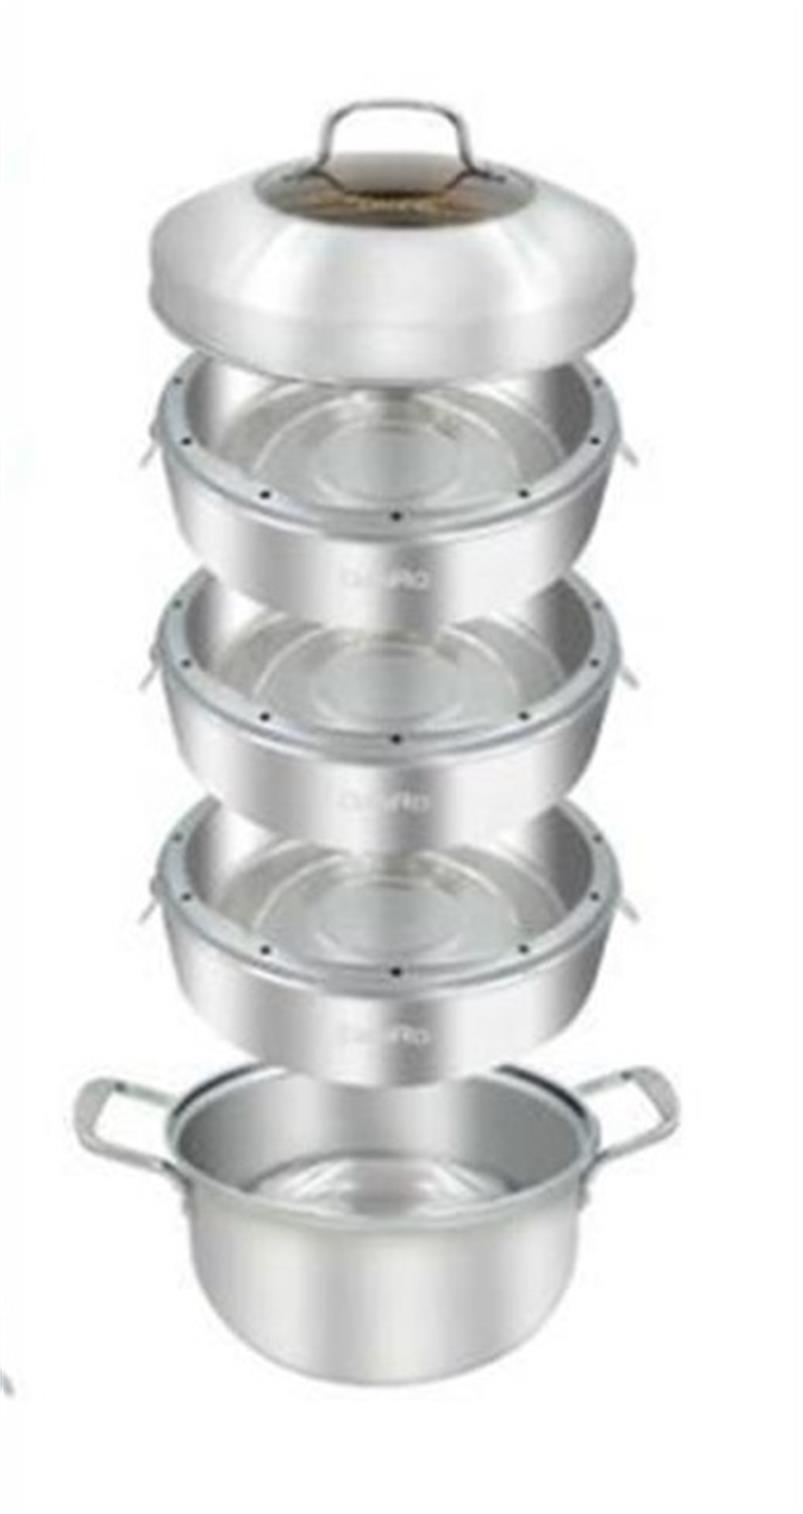 4件組蒸籠湯鍋